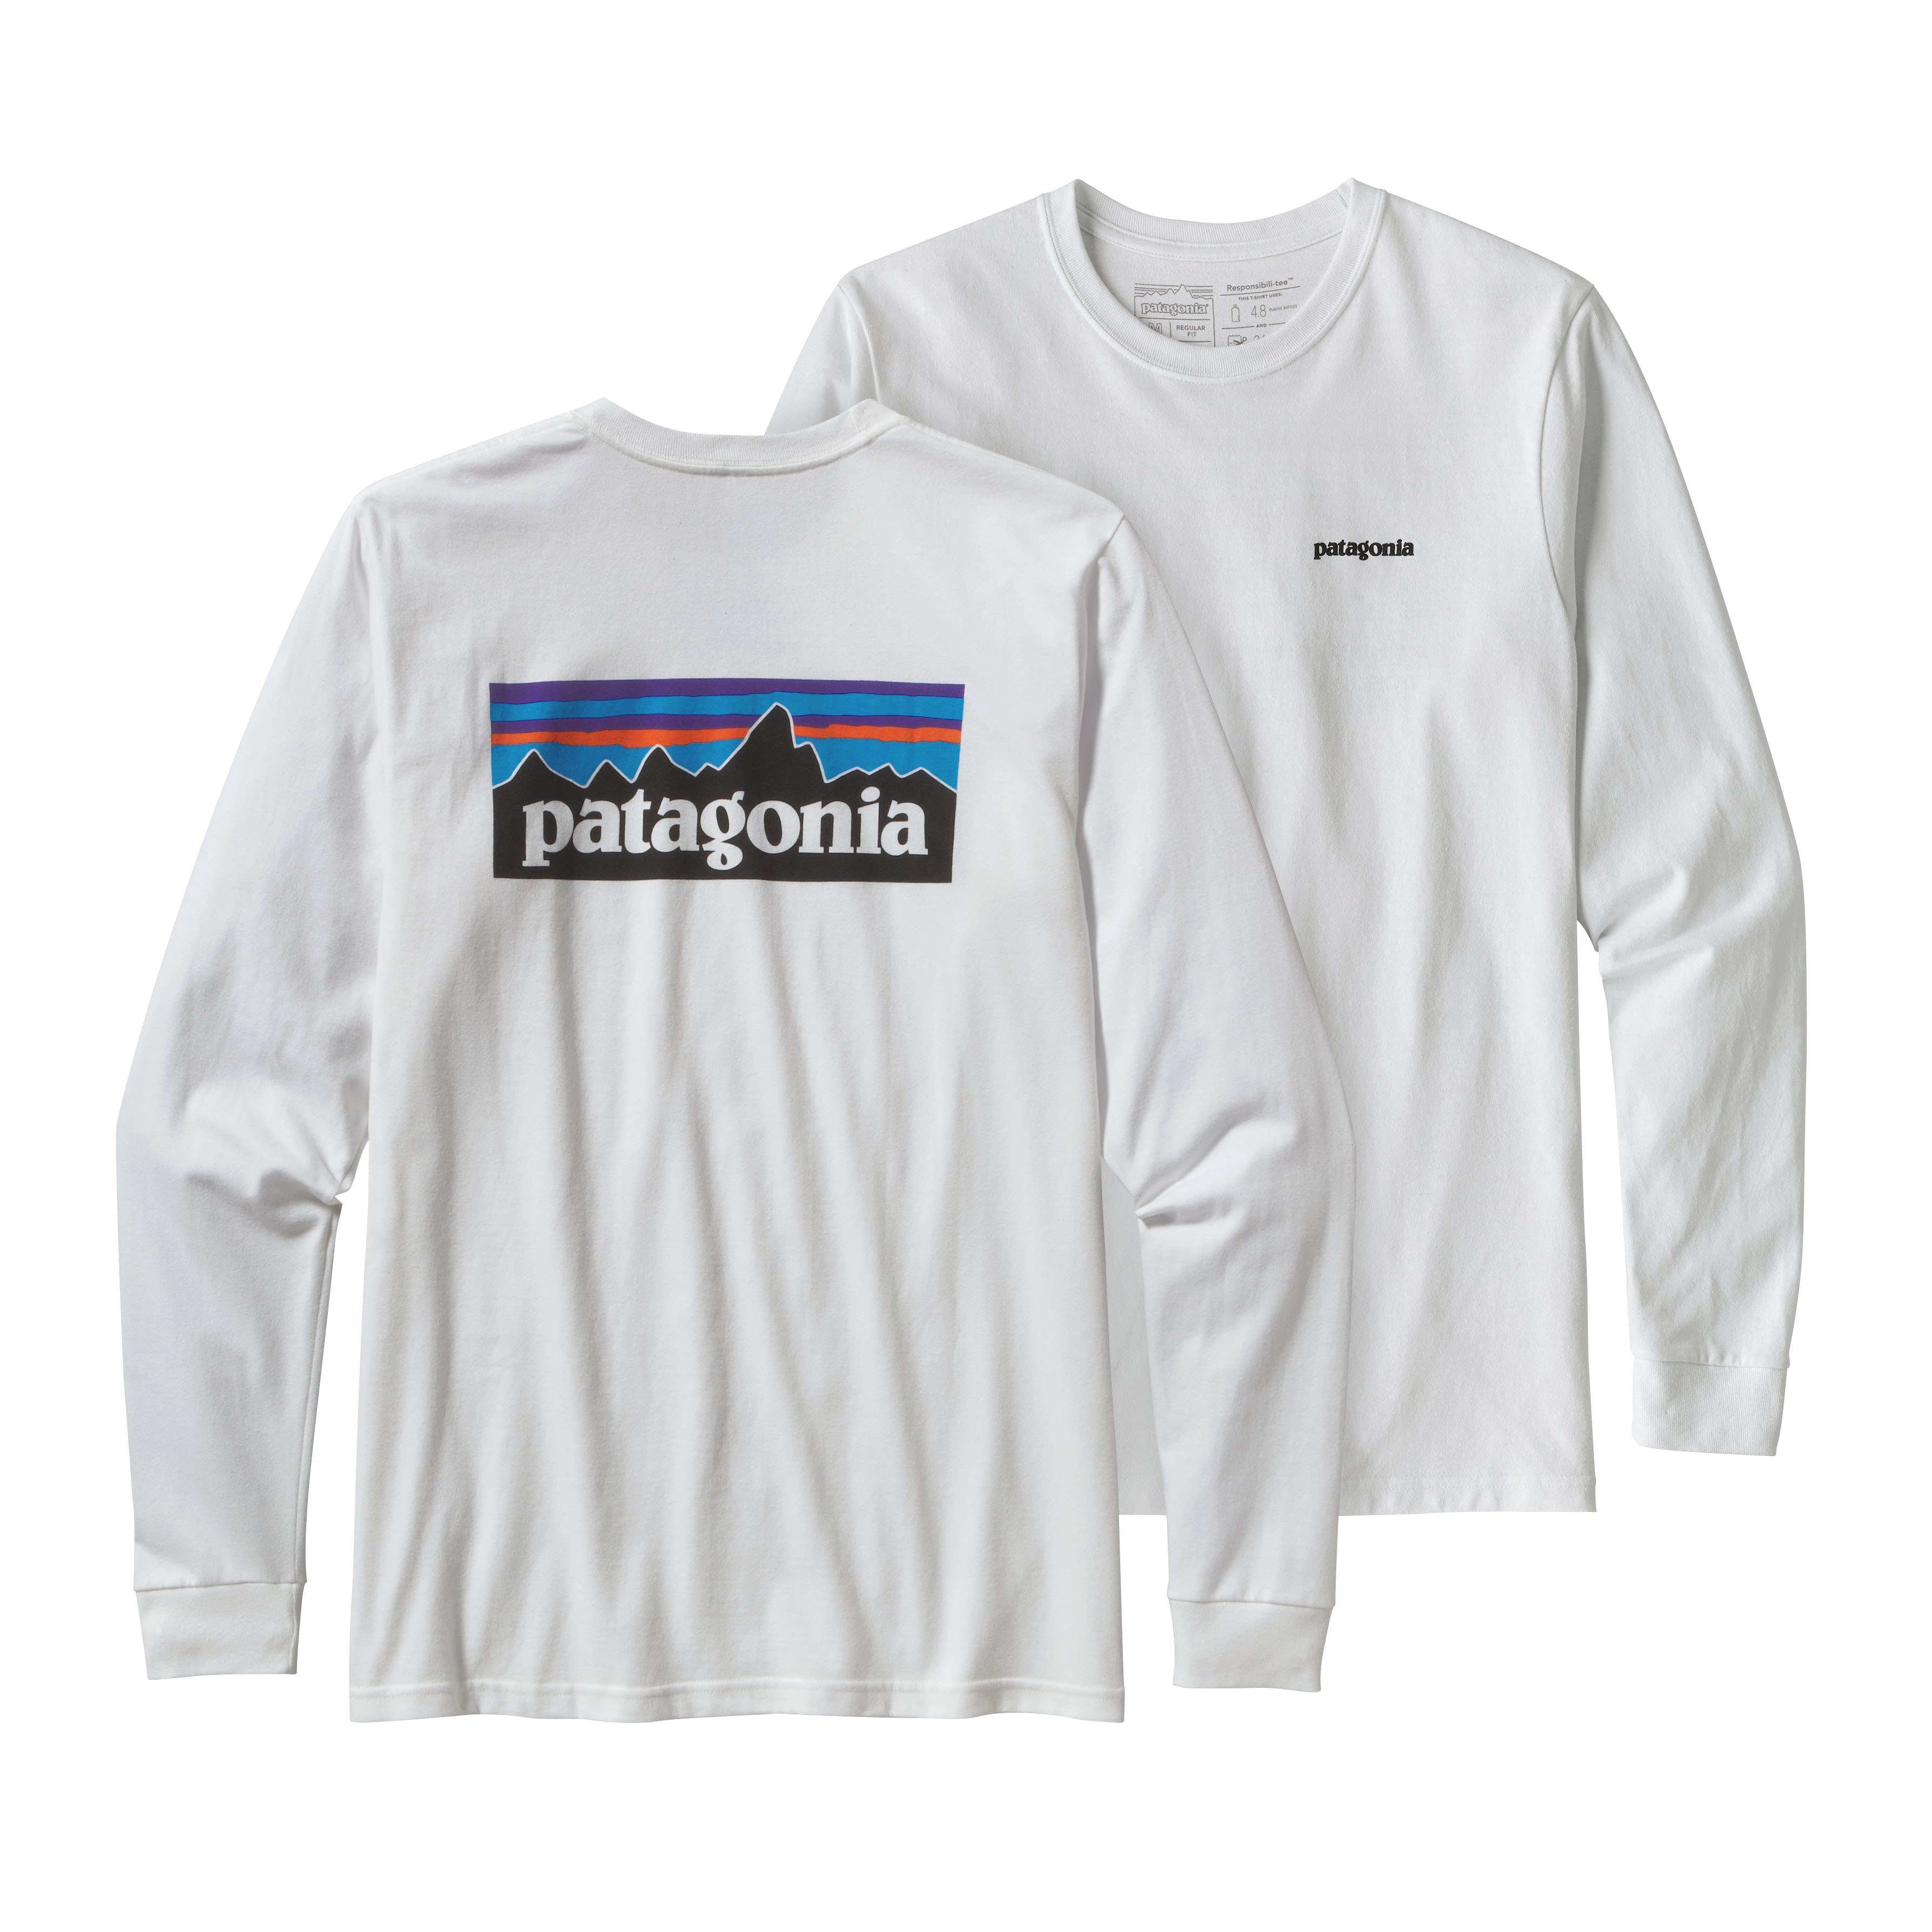 patagonia long sleeve t shirt uk